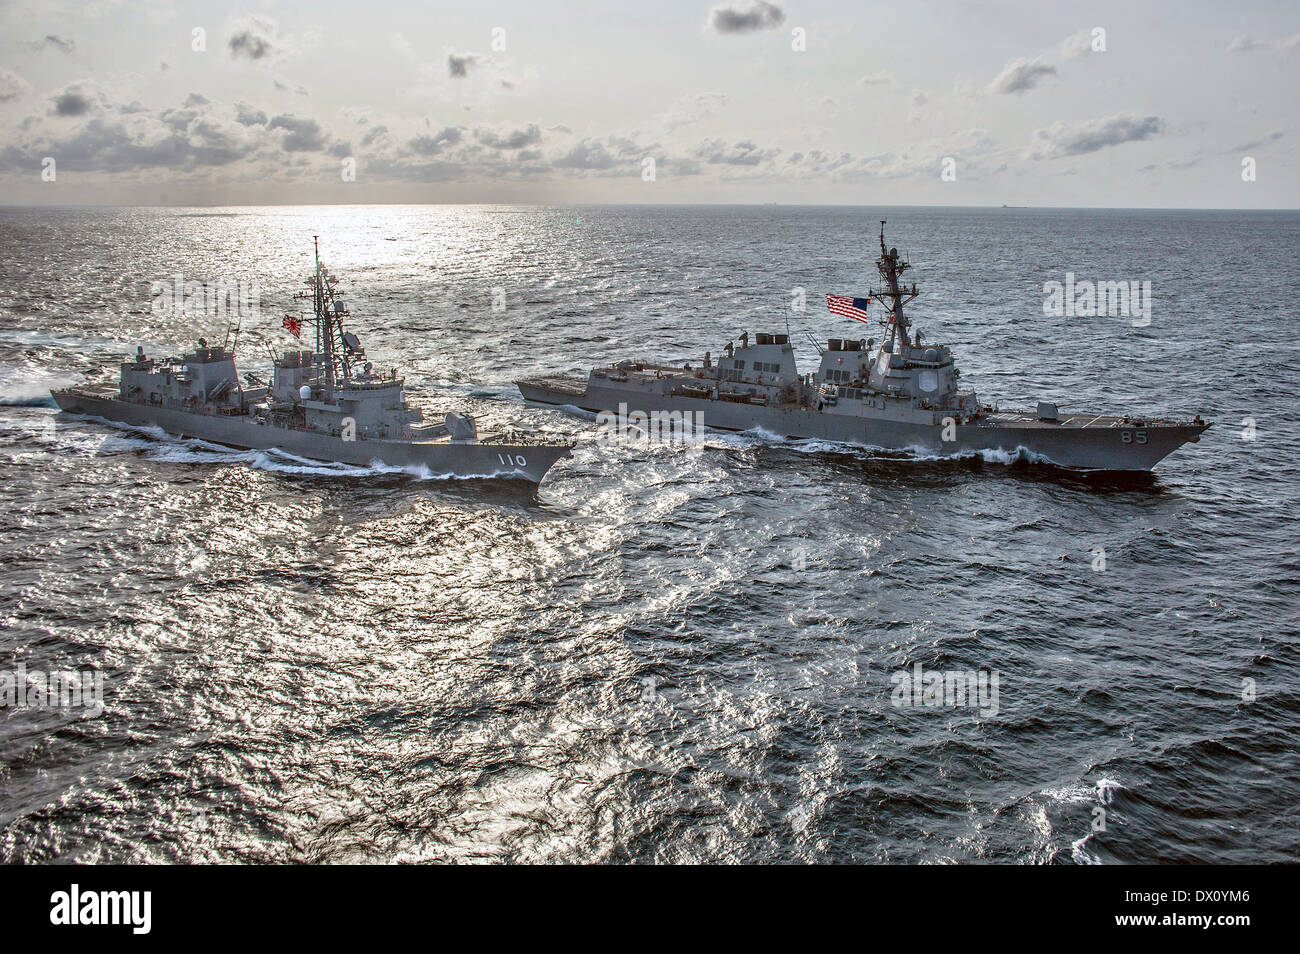 Giappone marittimo Forza di Autodifesa destroyer Takanami vele a fianco del Navy US Arleigh Burke-class missile destroyer USS McCampbell durante la formazione congiunta Marzo 09, 2014 nel Mare delle Filippine. Foto Stock